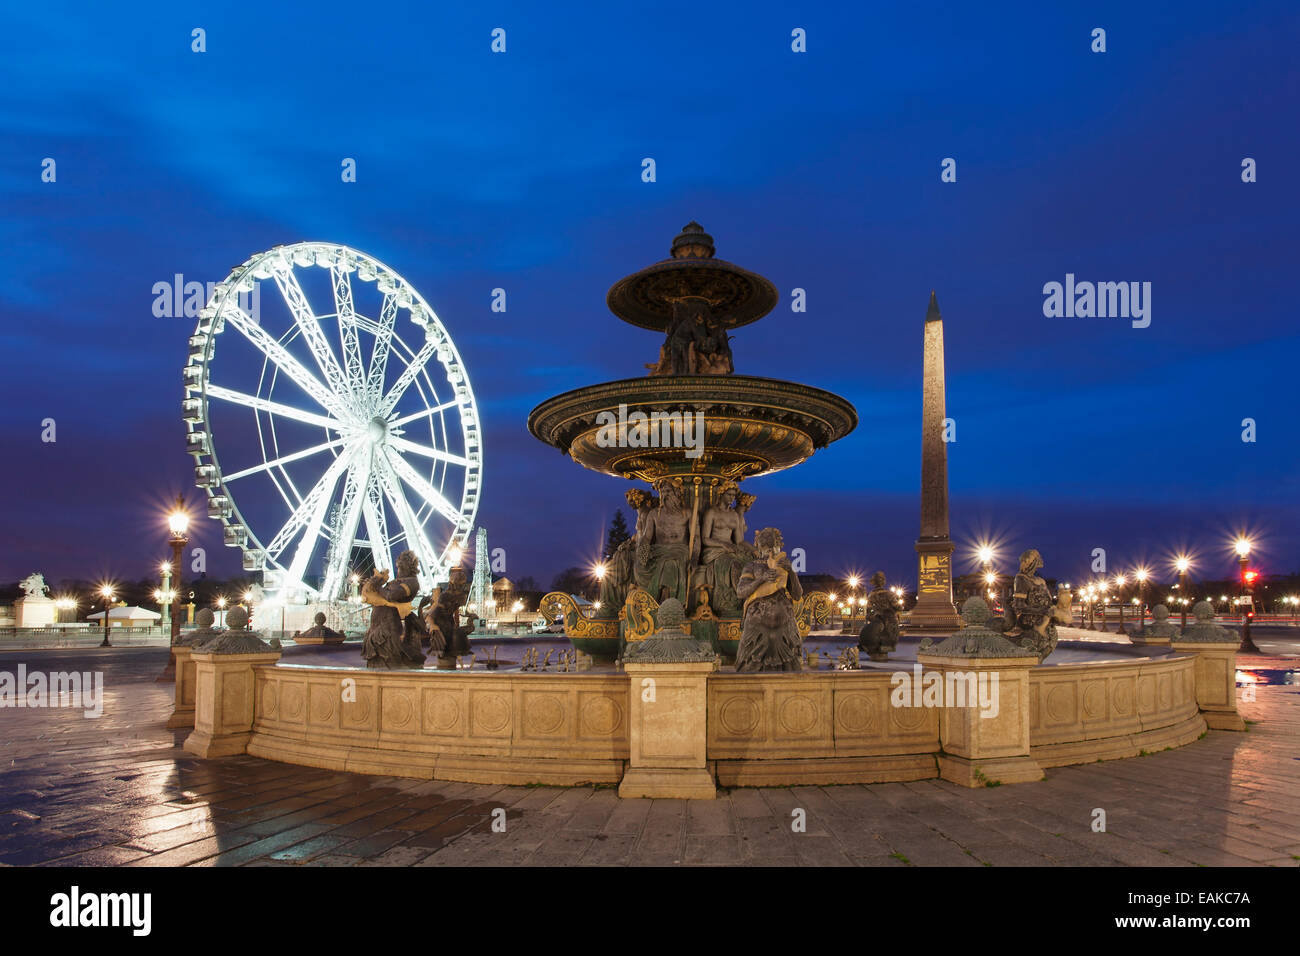 Fontaine sur la Place de la Concorde place en face d'une grande roue et d'un obélisque, Paris, Ile-de-France, France Banque D'Images